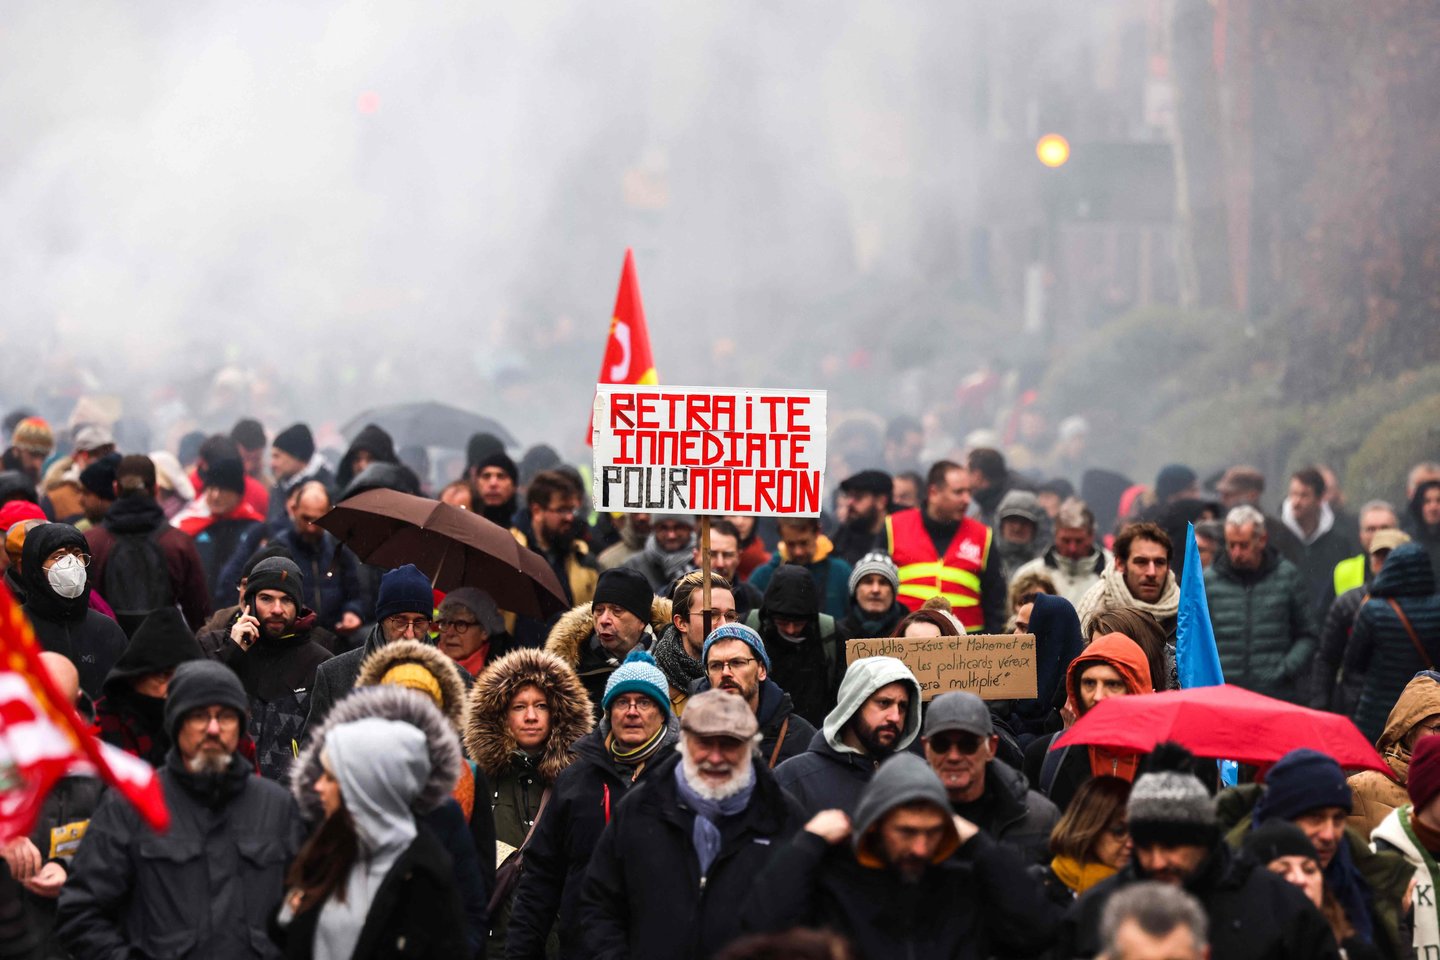 Praėjus dienai po to, kai Prancūzijos parlamentas pradėjo debatus dėl pensijų reformos, streikai vėl paralyžiavo dalį viešojo gyvenimo. Antradienį, trečiąją per tris savaites protestų dieną, į reisus neišvažiavo daug traukinių ir autobusų, nevyko pamokos. Žmones streikuoti ir protestuoti pakvietė svarbiausios profsąjungos. Prancūzijos vyriausybė nori iki 2030 metų pensinį amžių padidinti nuo 62 iki 64 metų.<br>AFP/Scanpix nuotr.